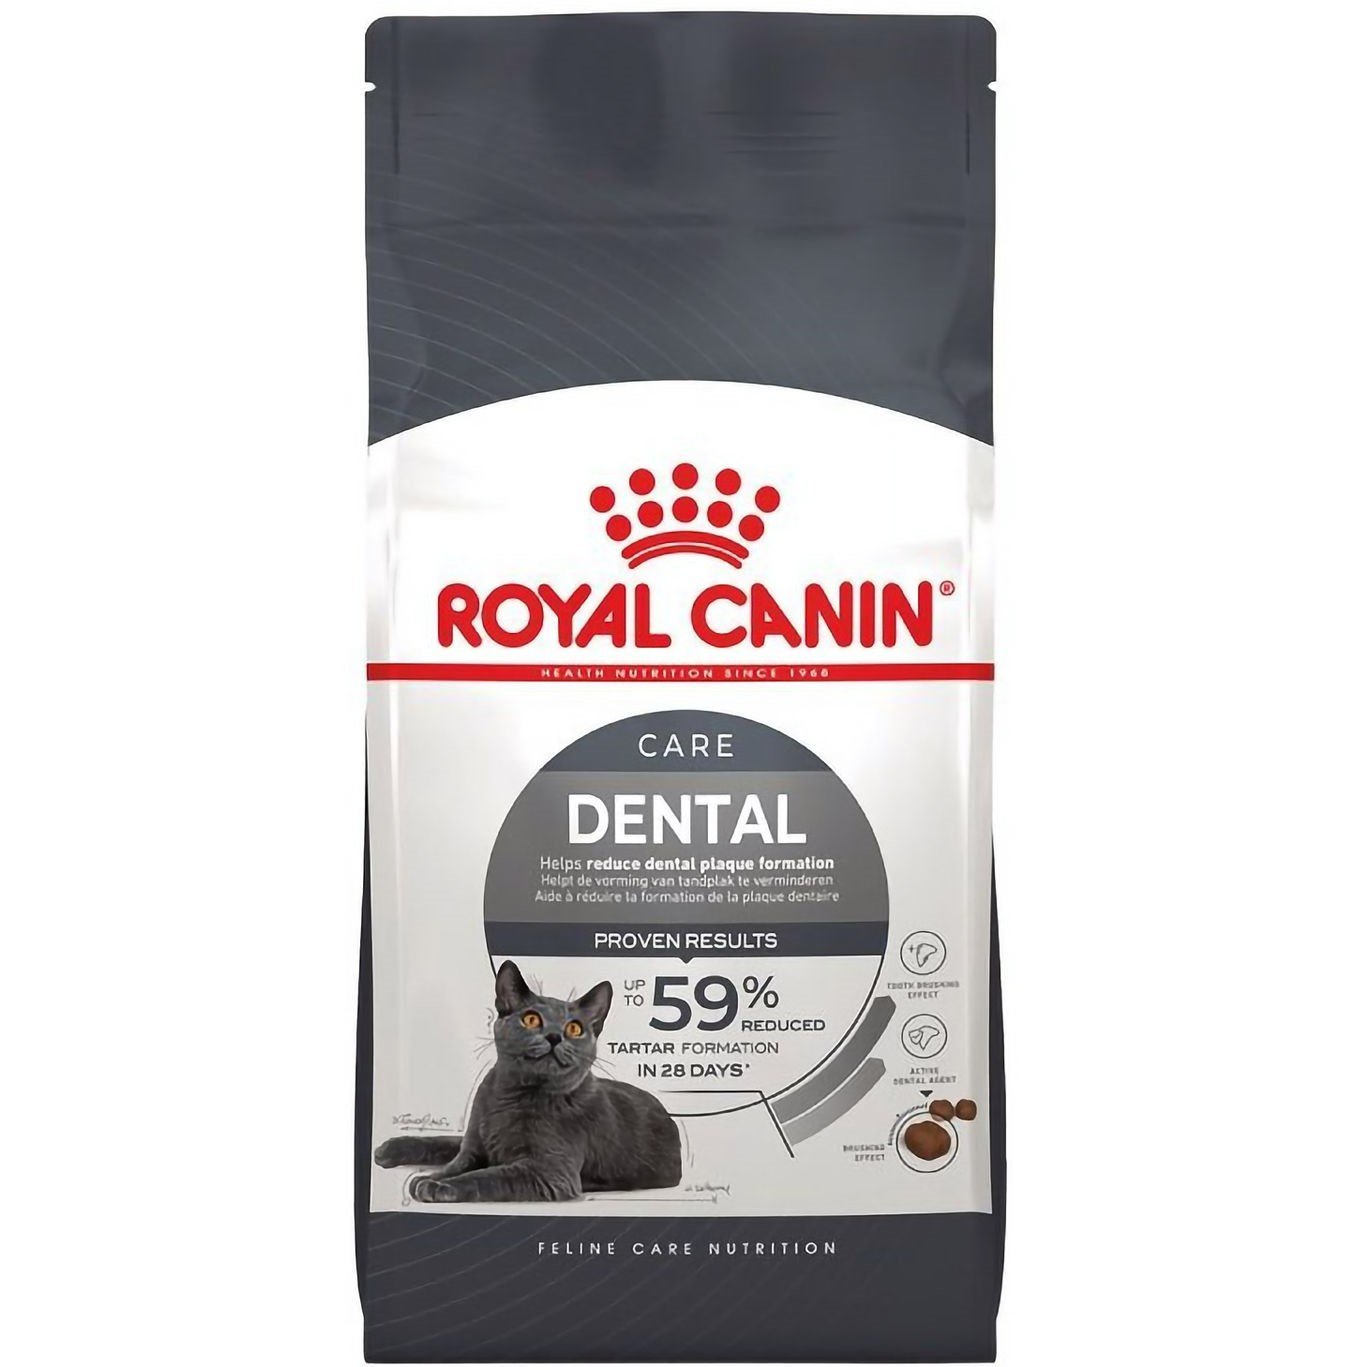 Сухой корм для кошек Royal Canin Dental Care, для профилактики образования зубного налета, 1,5 кг (2532015) - фото 1